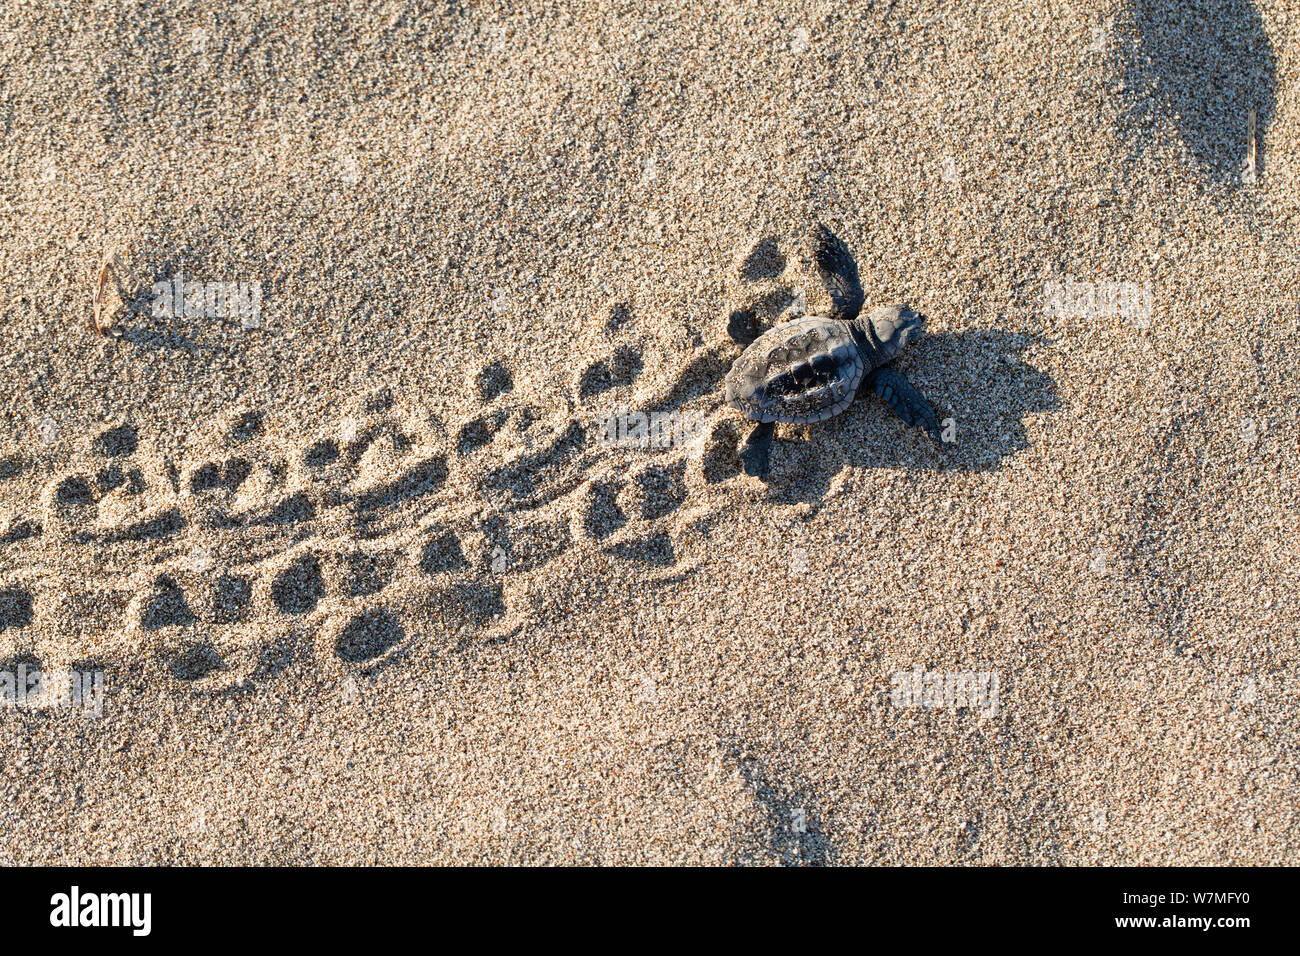 Tortue caouanne (Caretta caretta) exécutant des tortues à la mer, côte lycienne, Mer Méditerranée, Turquie Banque D'Images